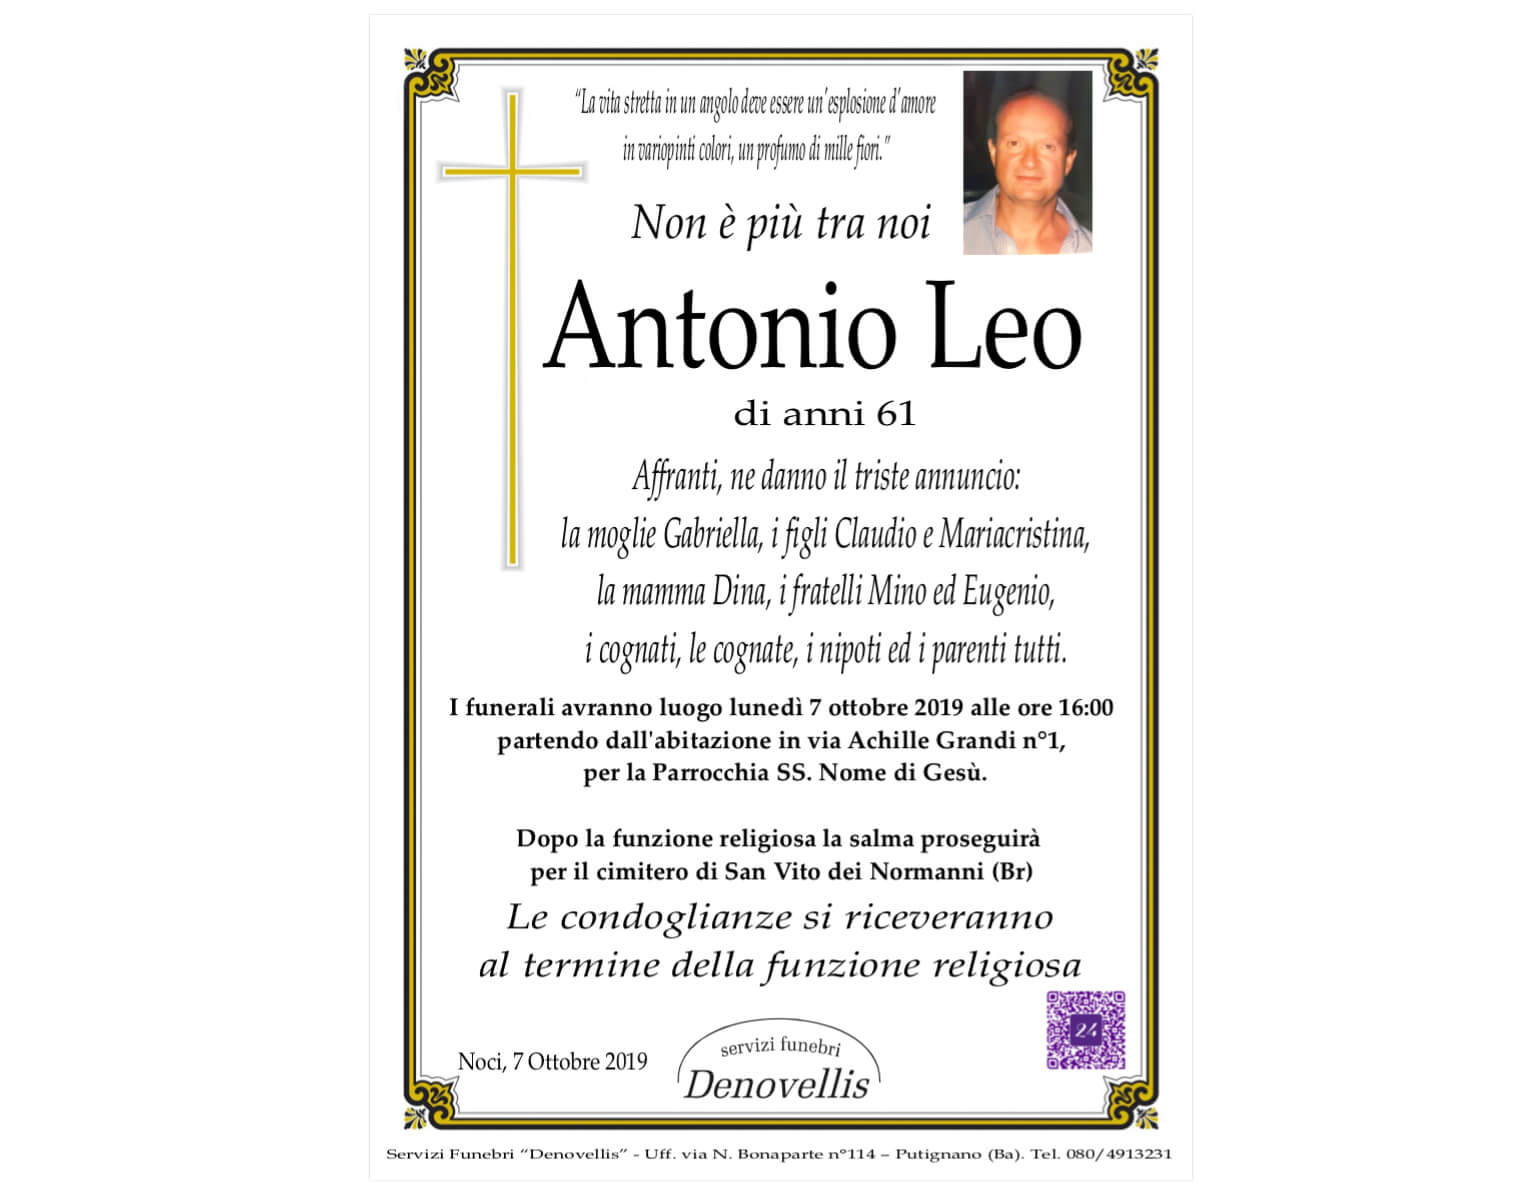 Antonio Leo